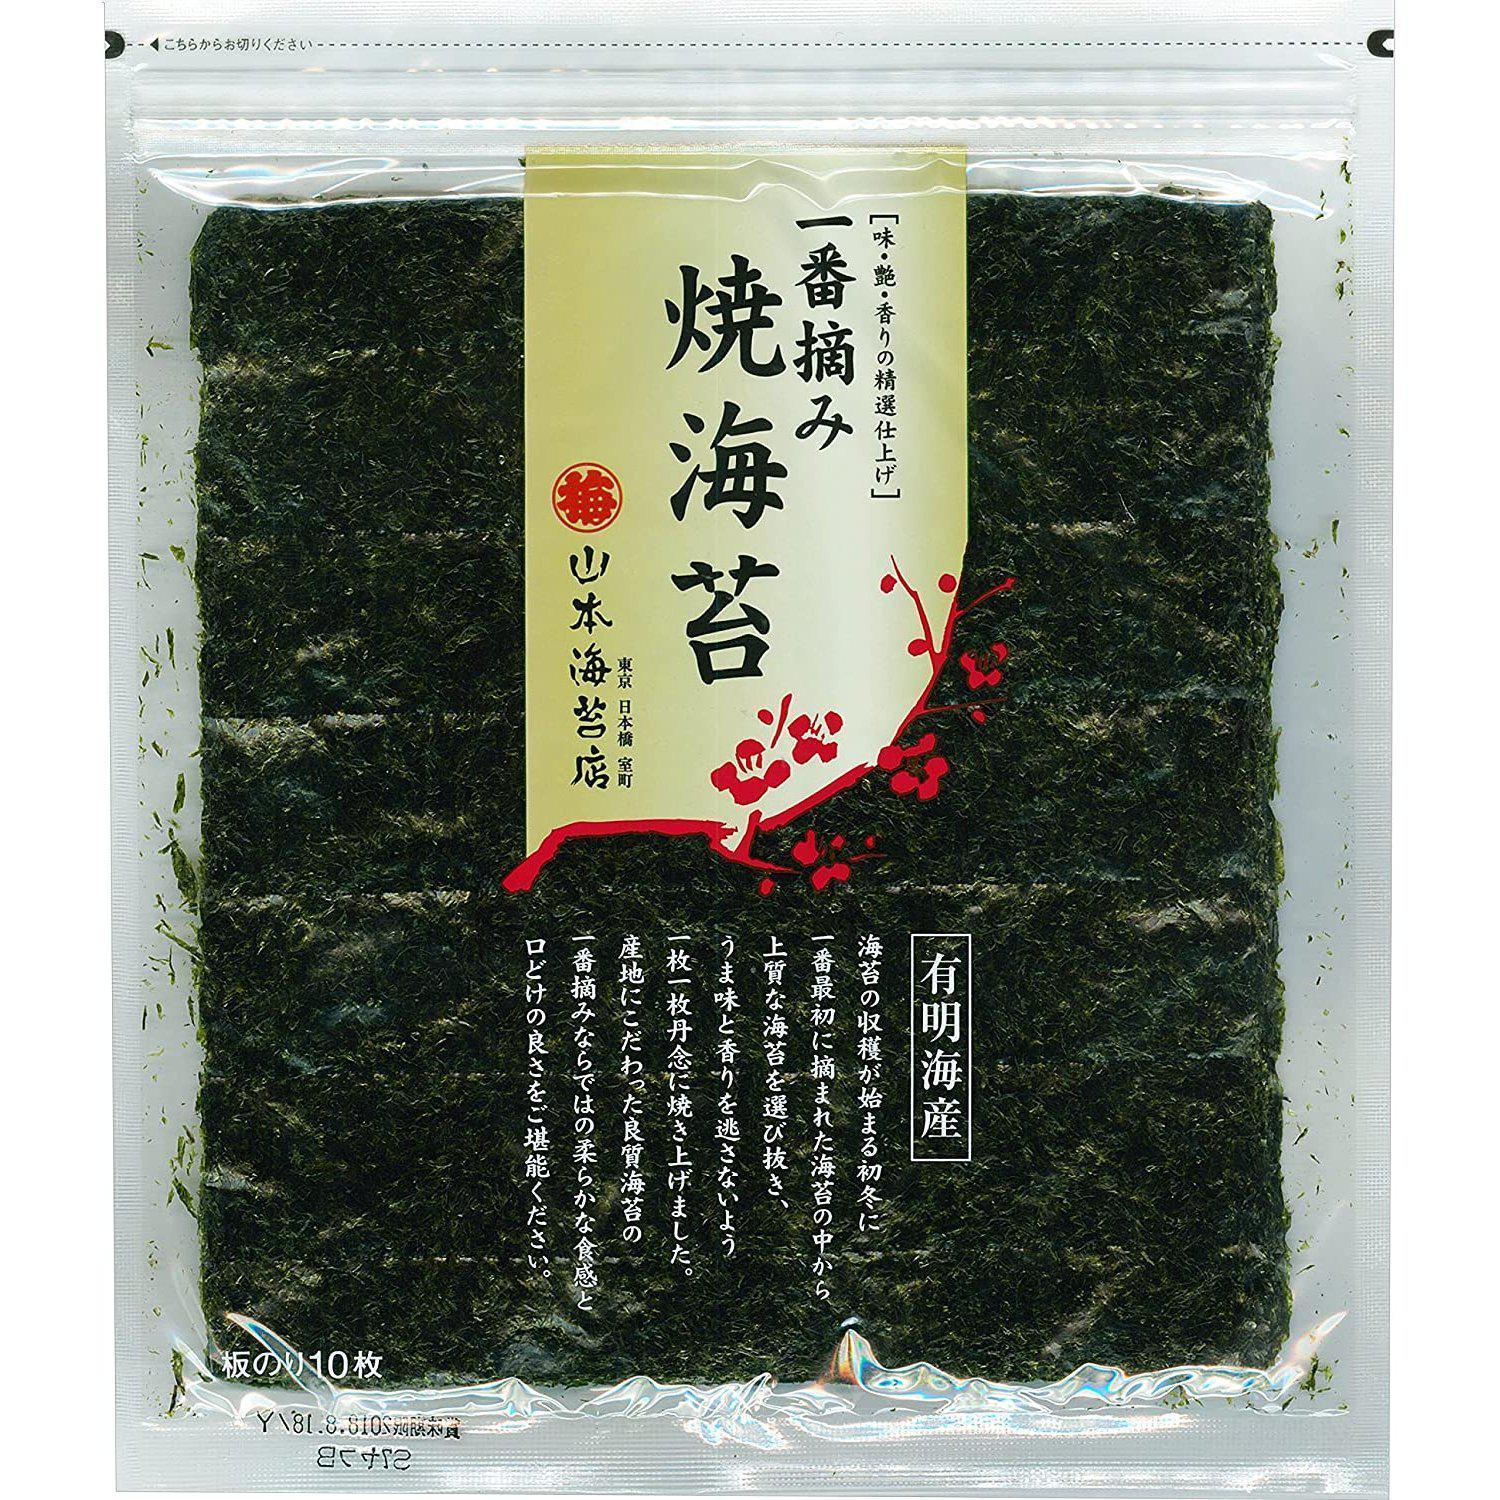 Yamamoto Japanese Premium Nori Seaweed Sheets 10 ct.